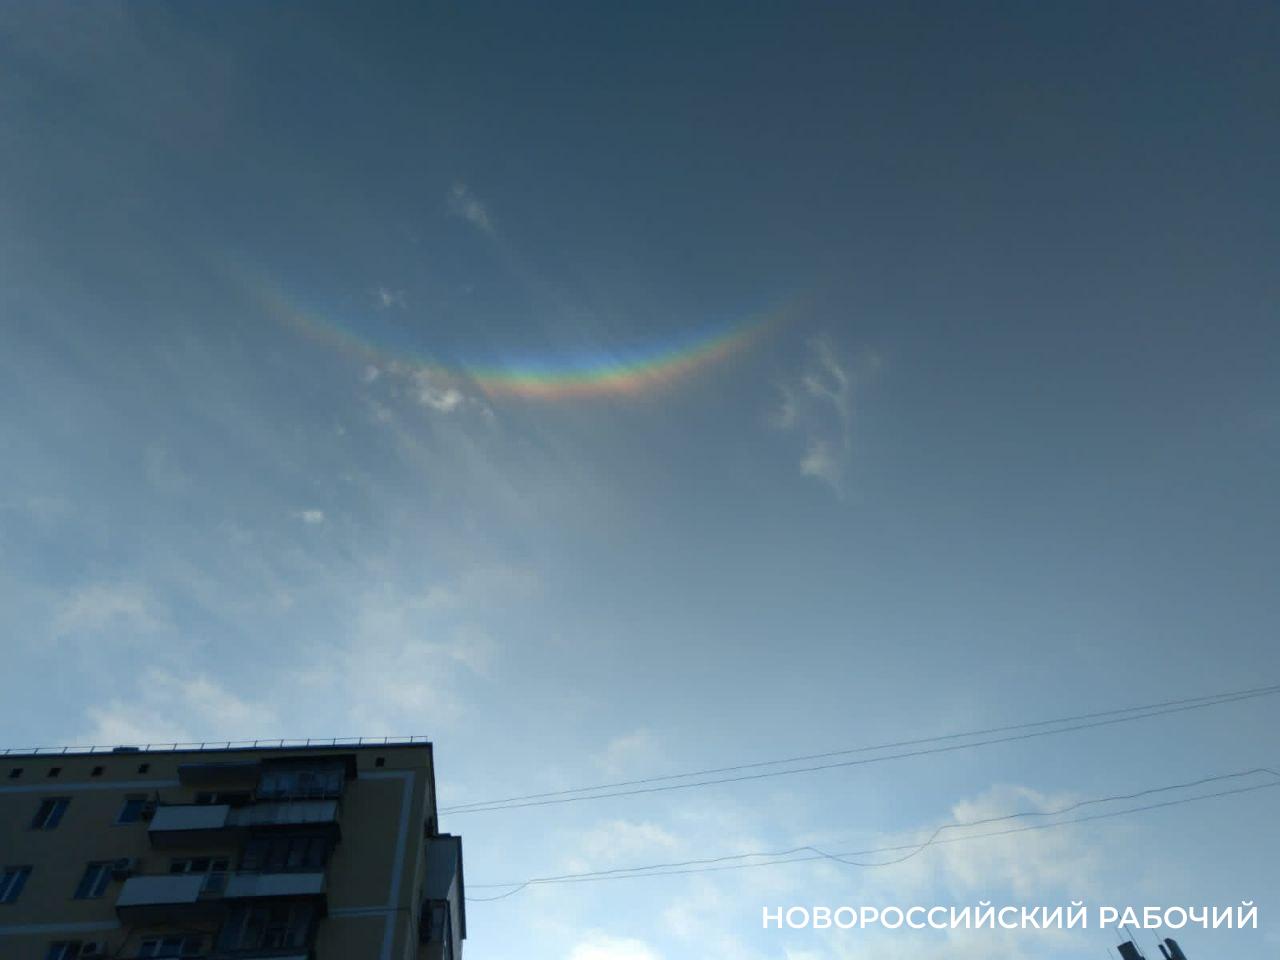 В Новороссийске наблюдали перевернутую радугу